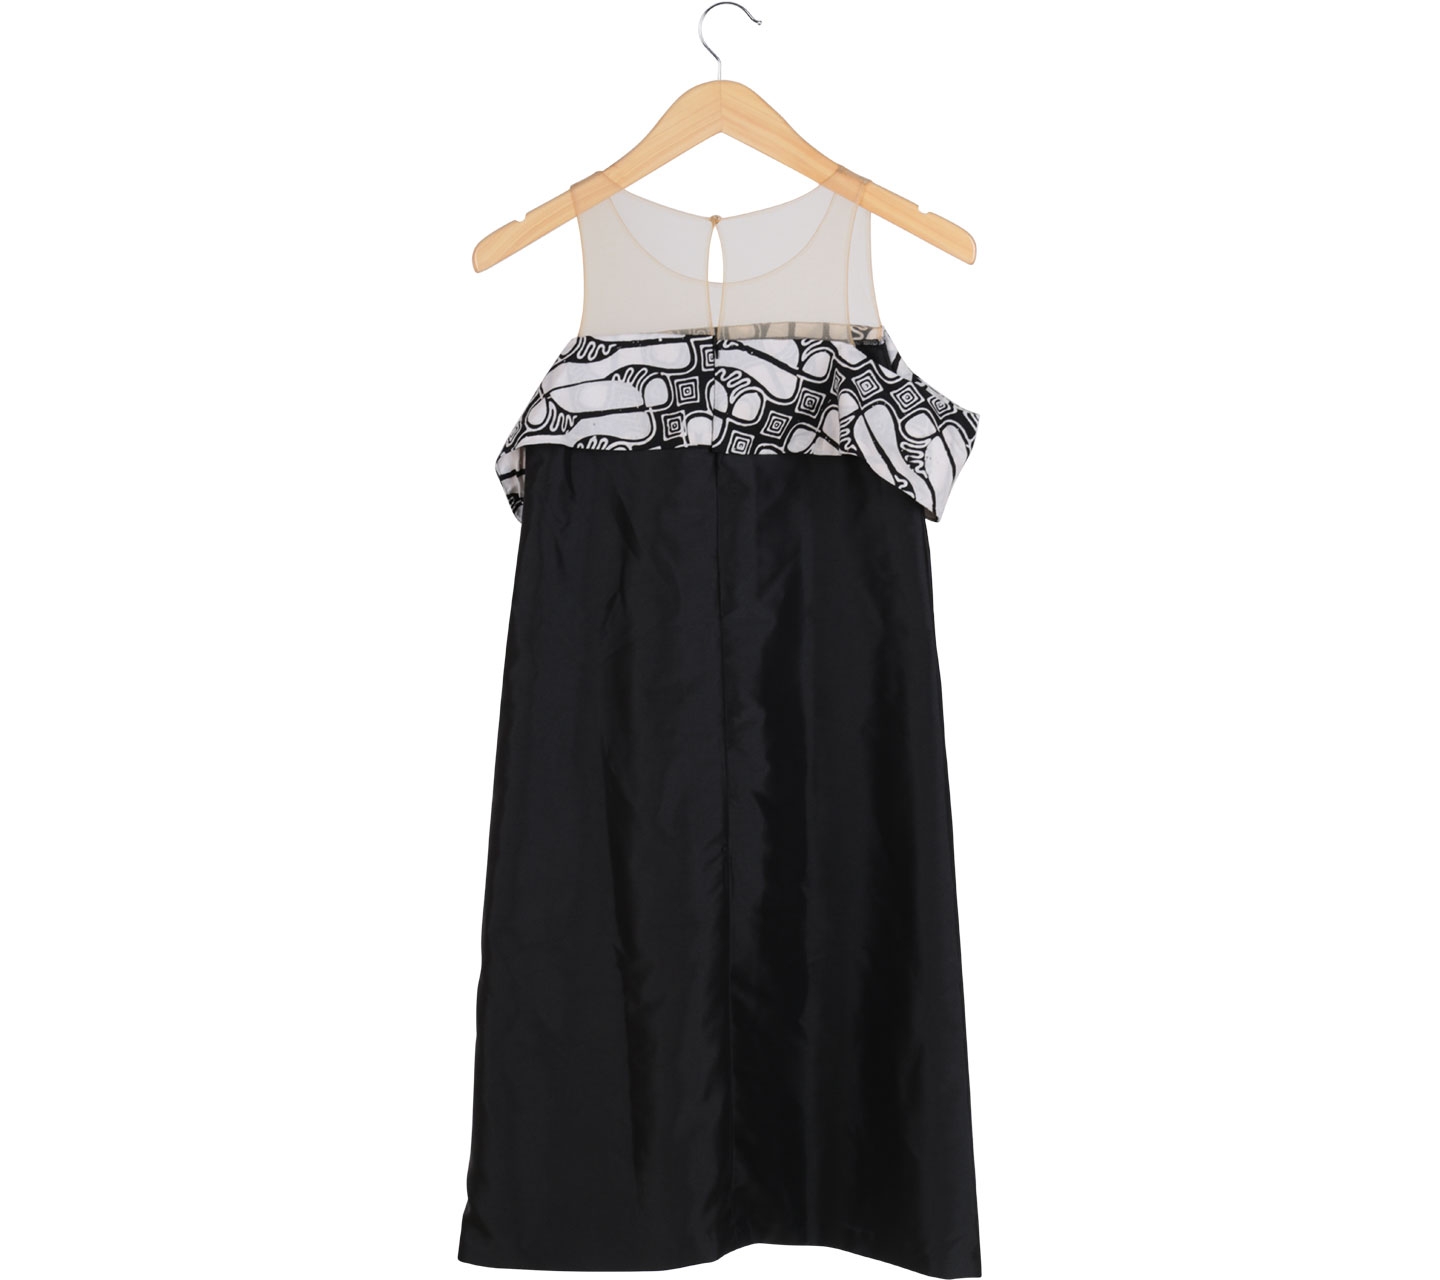 Seniman Kain Black Batik Mini Dress